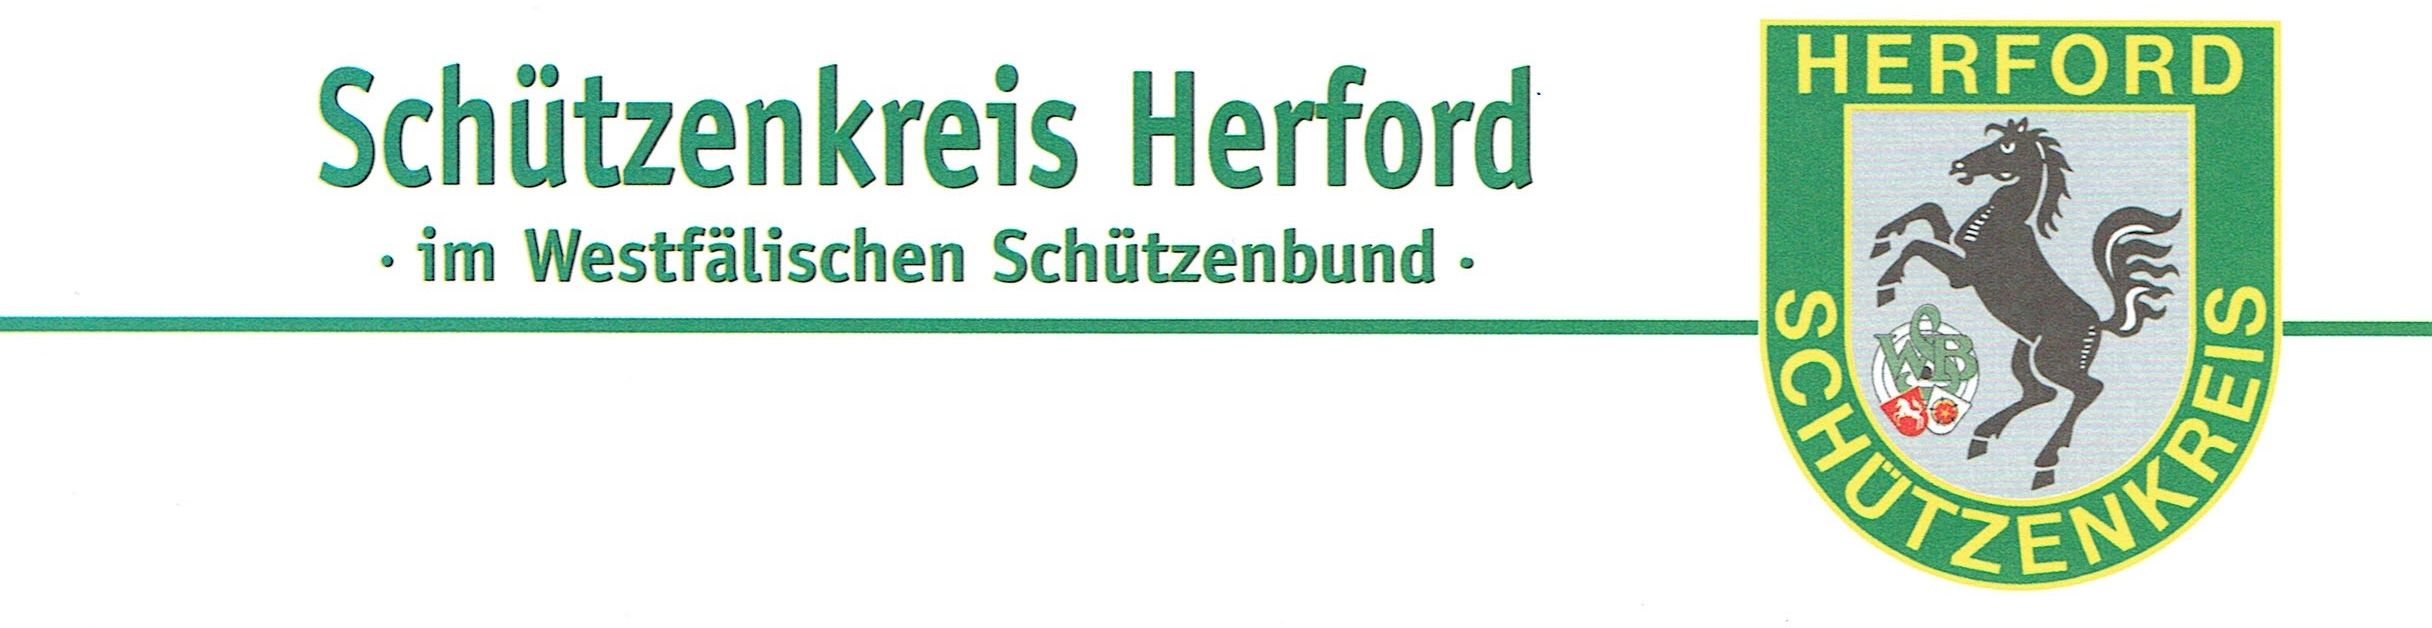 Schützenkreis Herford